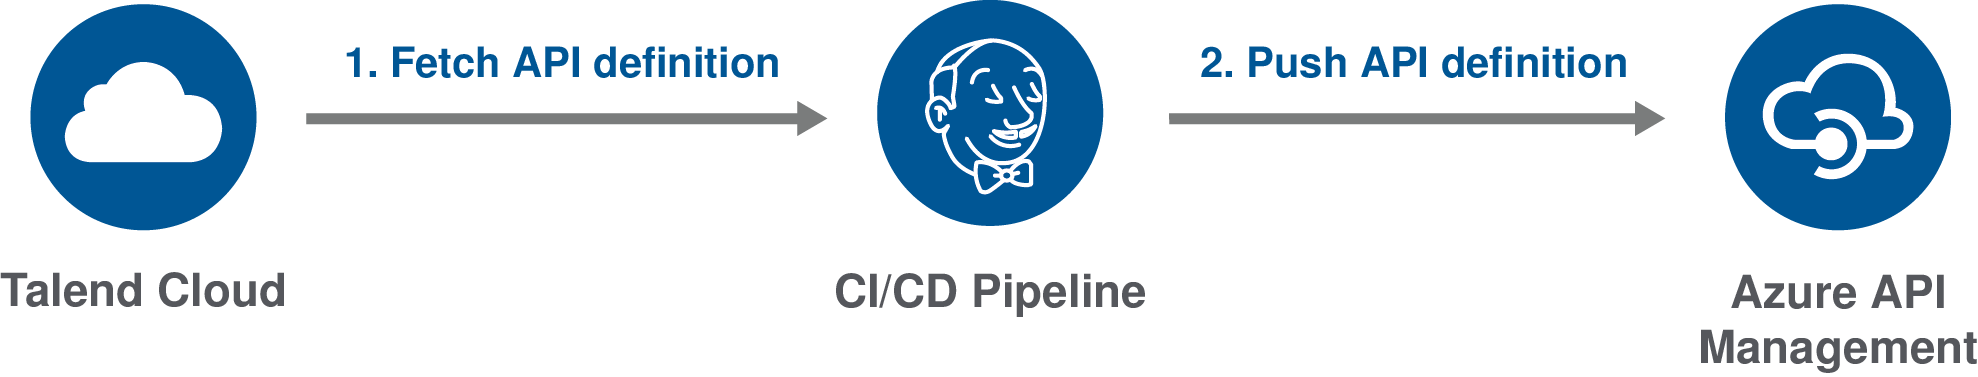 API定義がCI/CDパイプラインによってTalend Cloudから取得され、Azure API Managementにプッシュされるプロセスの図。